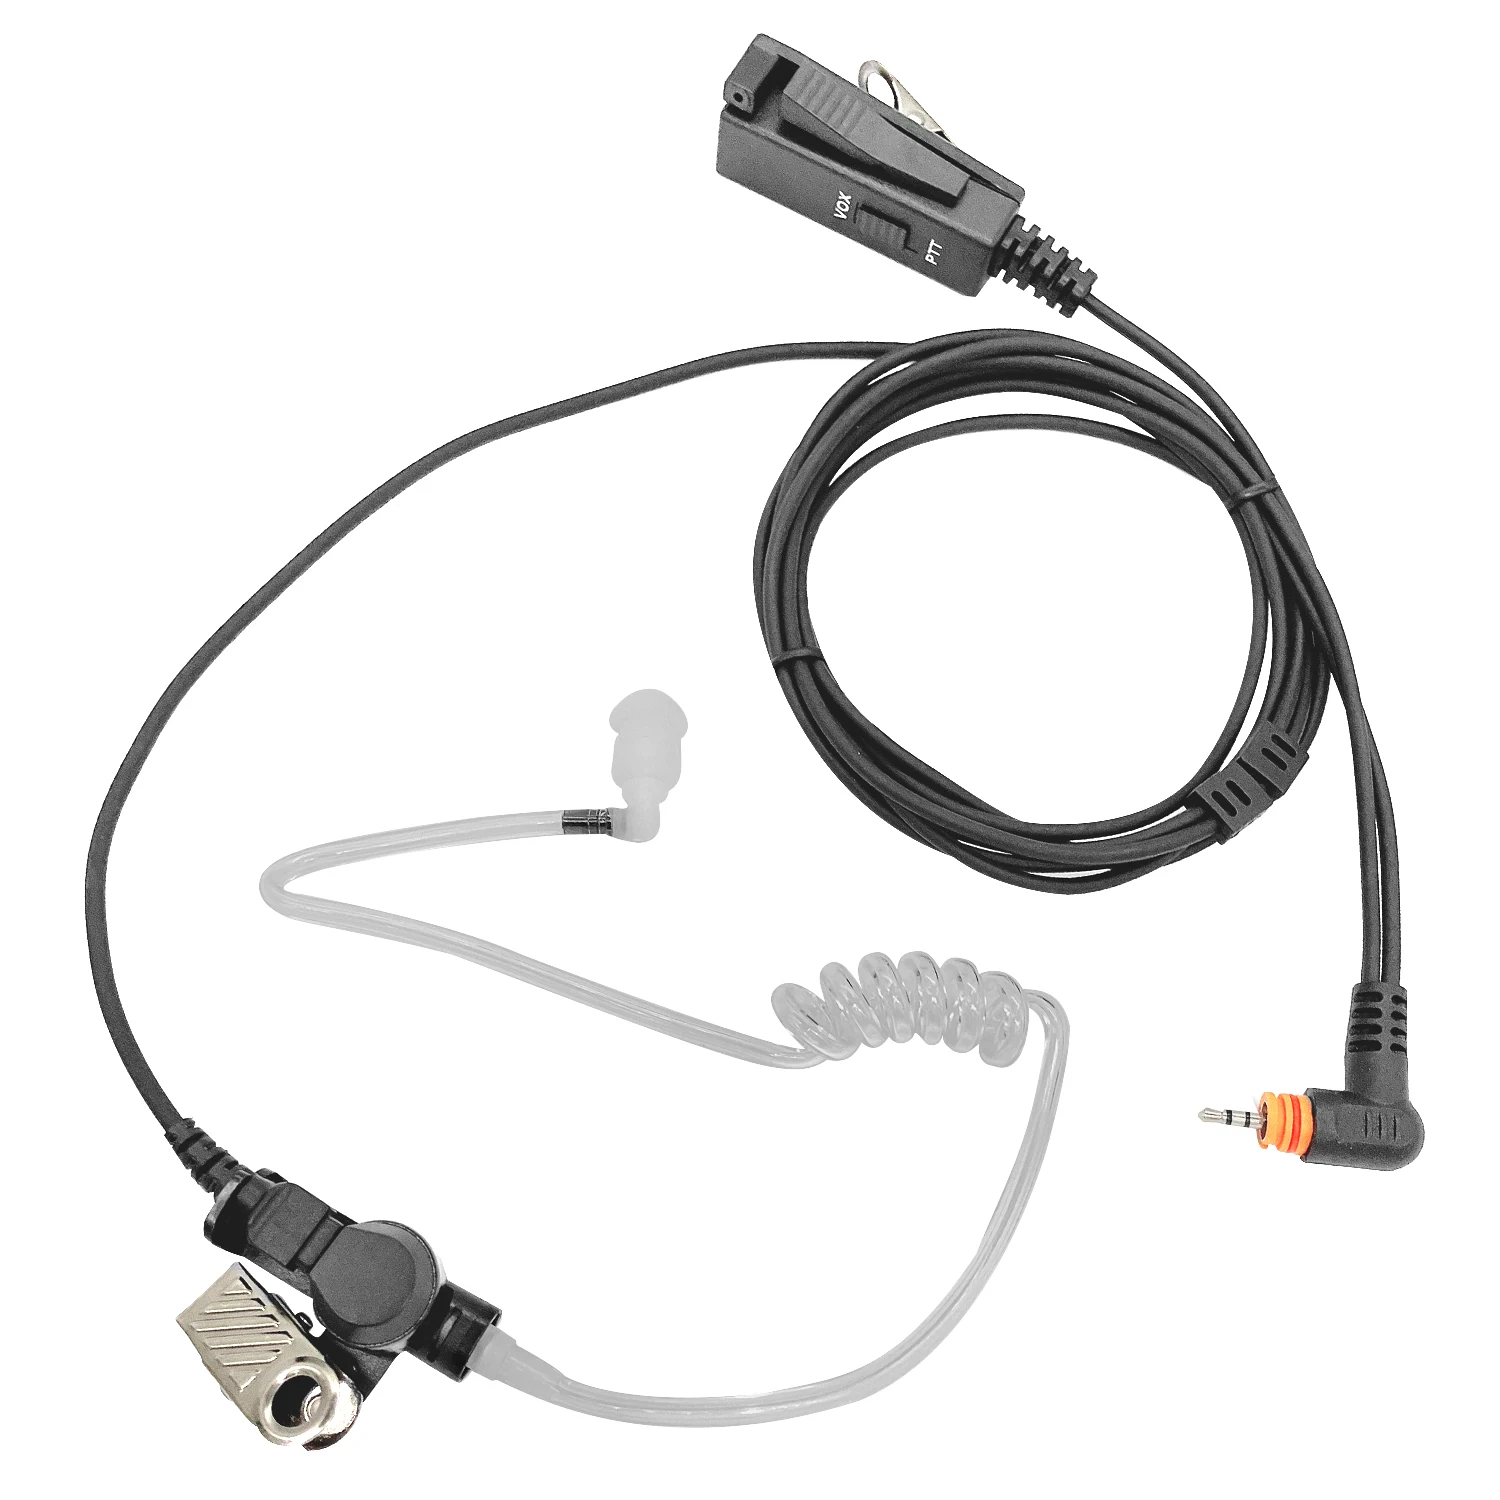 Earpiece walkie talkie radio earphone Compatible with the MOTOROLA following models:SL1K, SL1M, SL7550, SL7580, SL7590